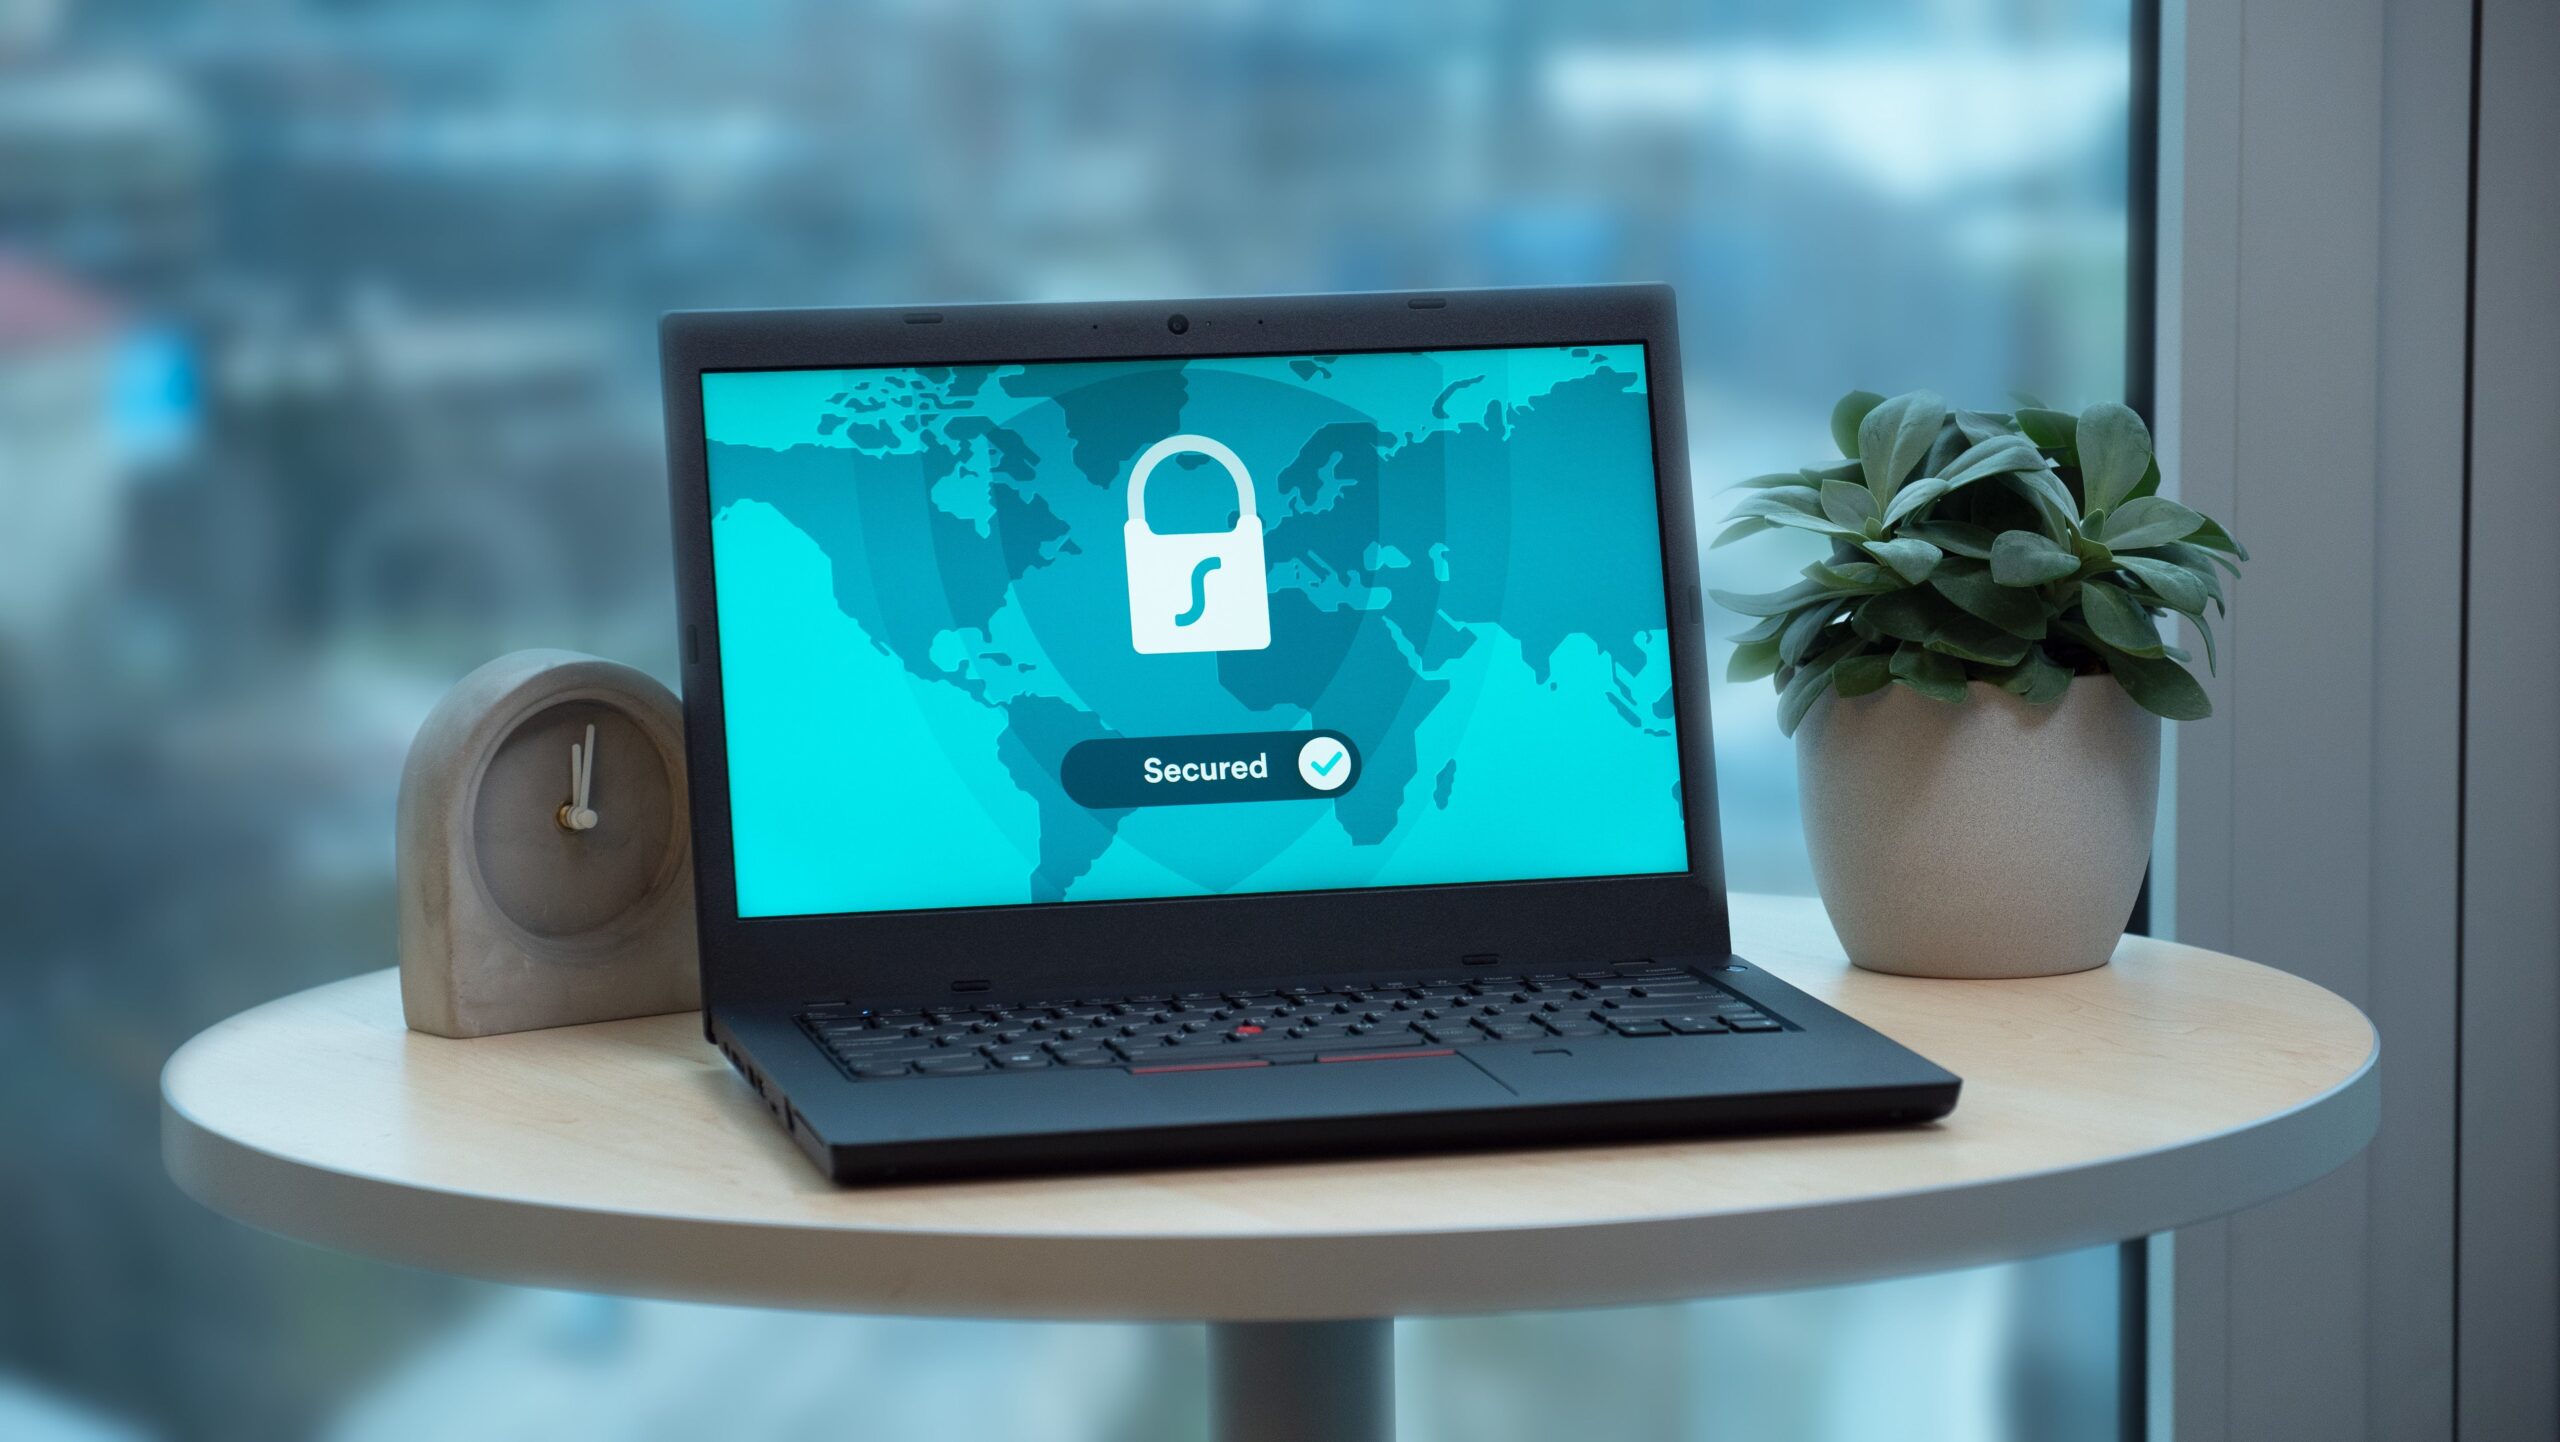 VPN keeps you secure laptop